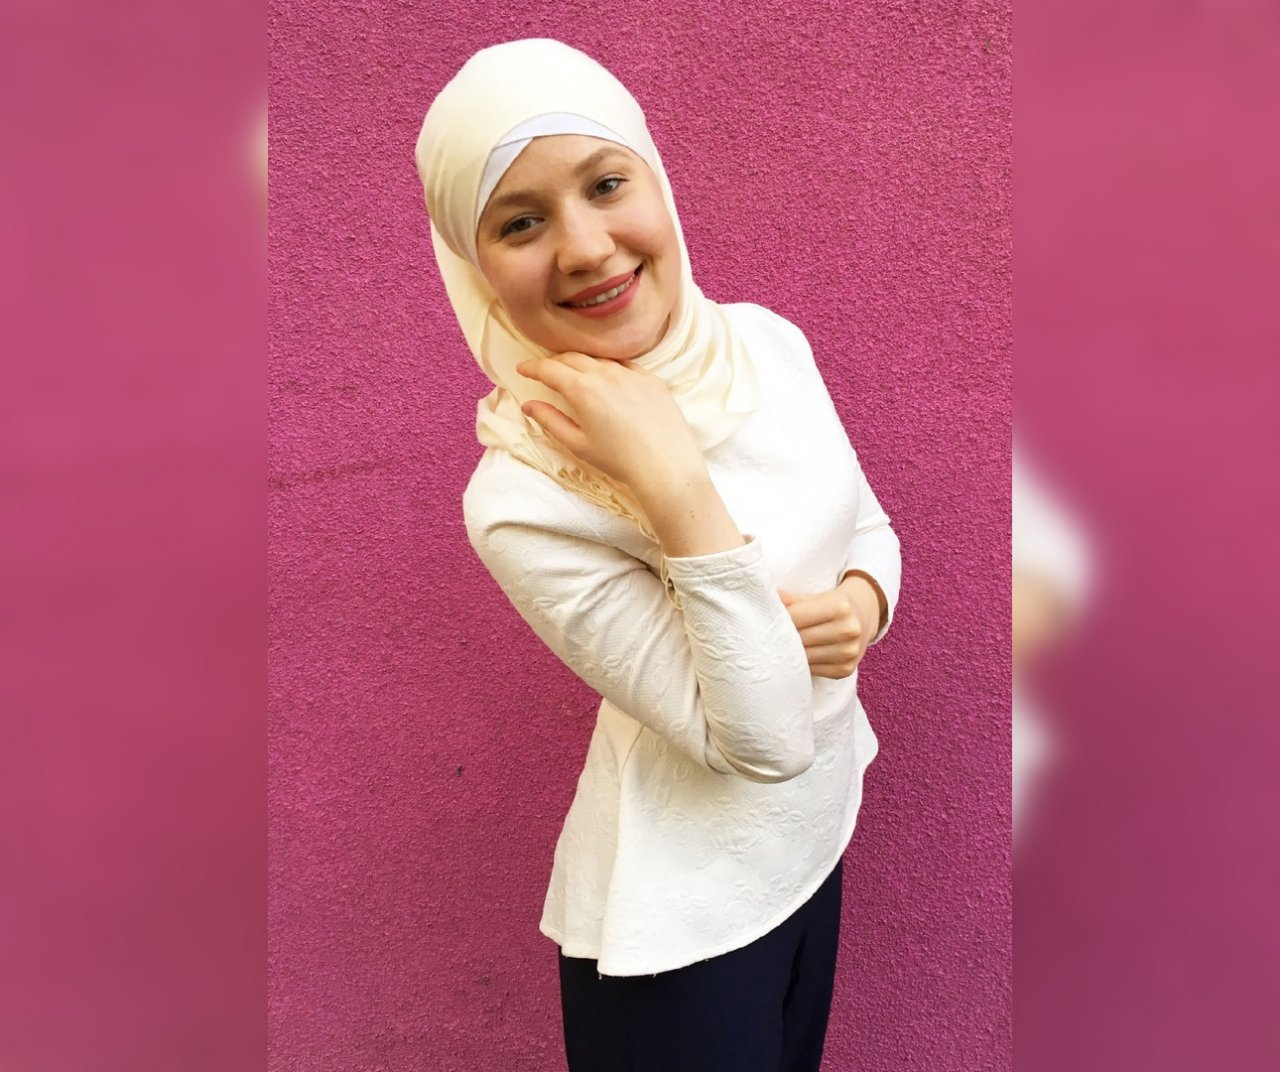 «Вы под хиджабом лысая?»: мусульманка о реакции кировчан на свою внешность